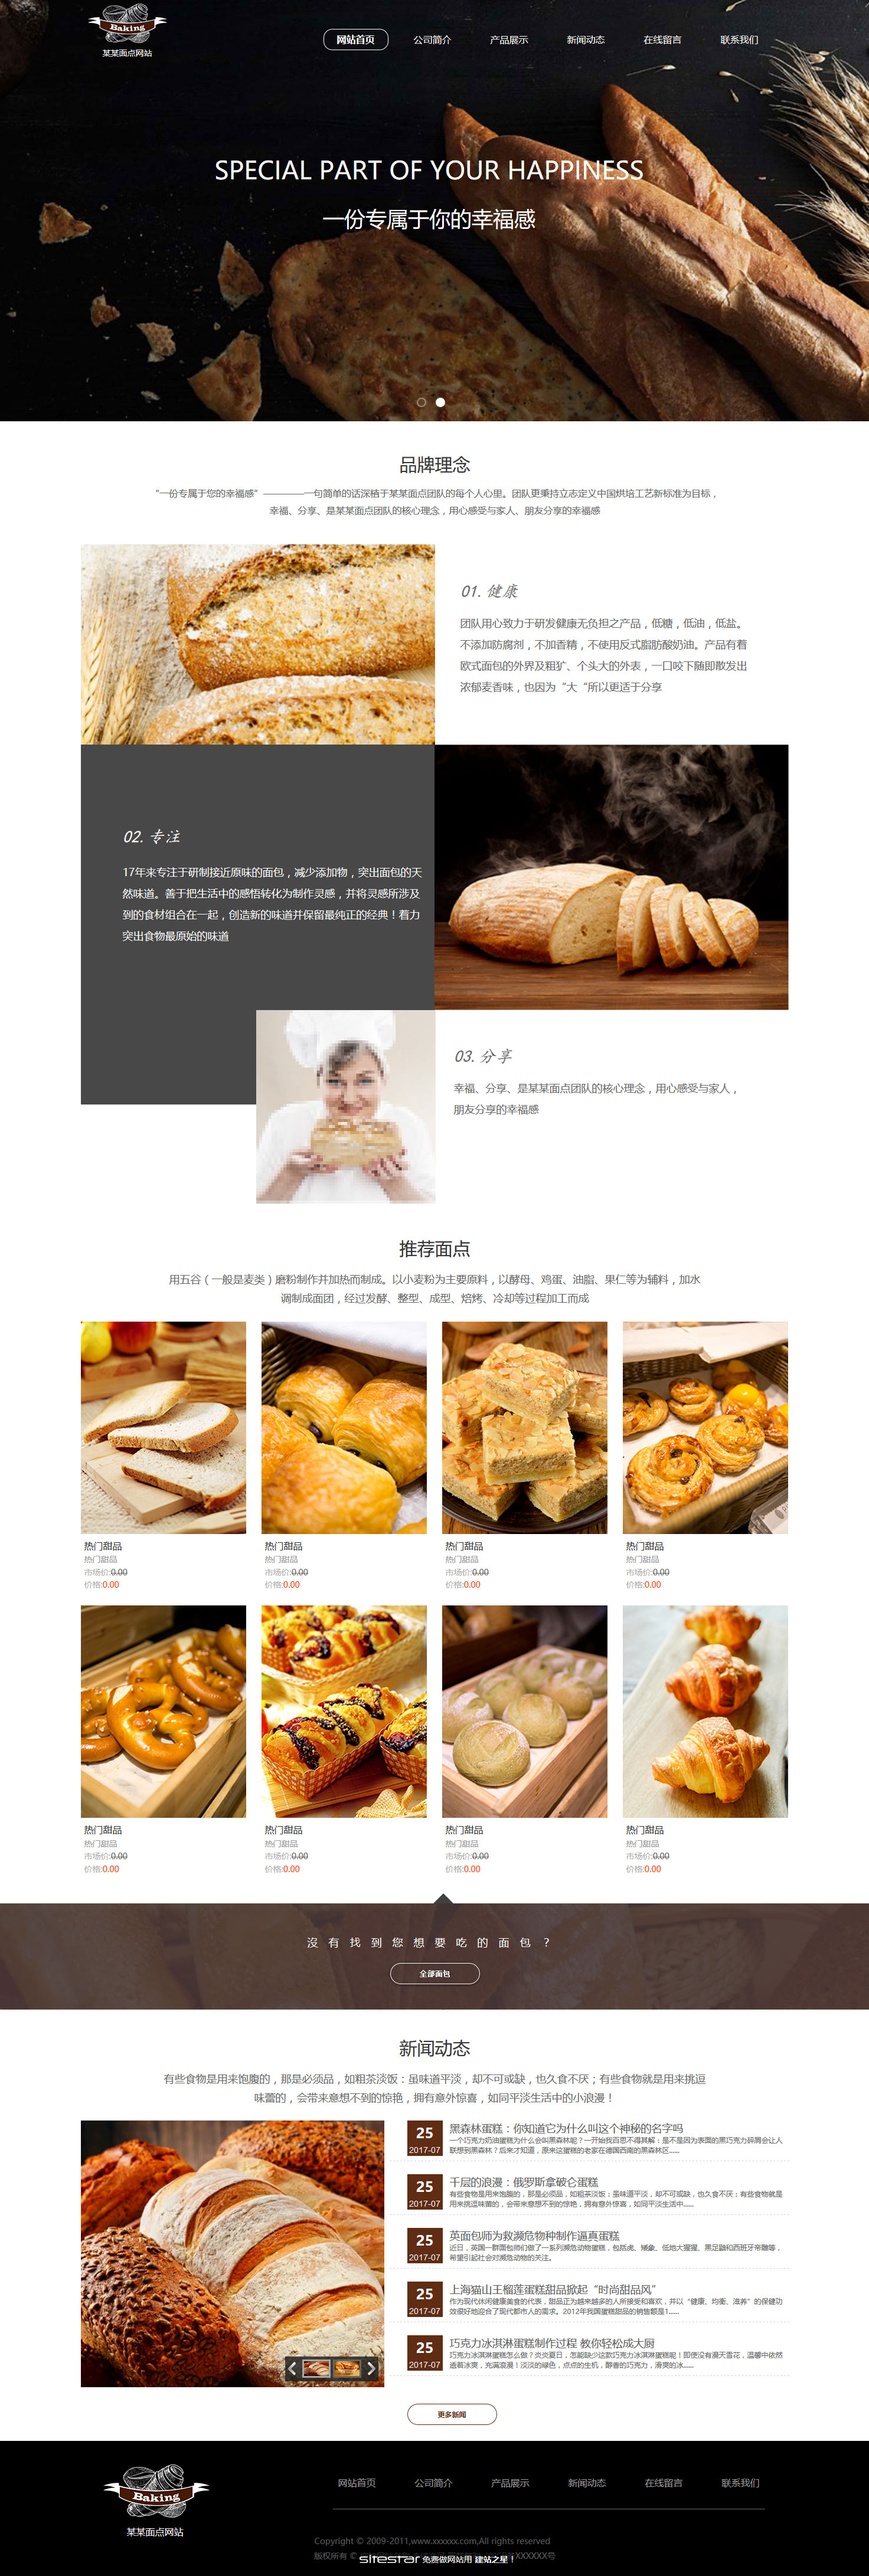 食品网站模板-food-220